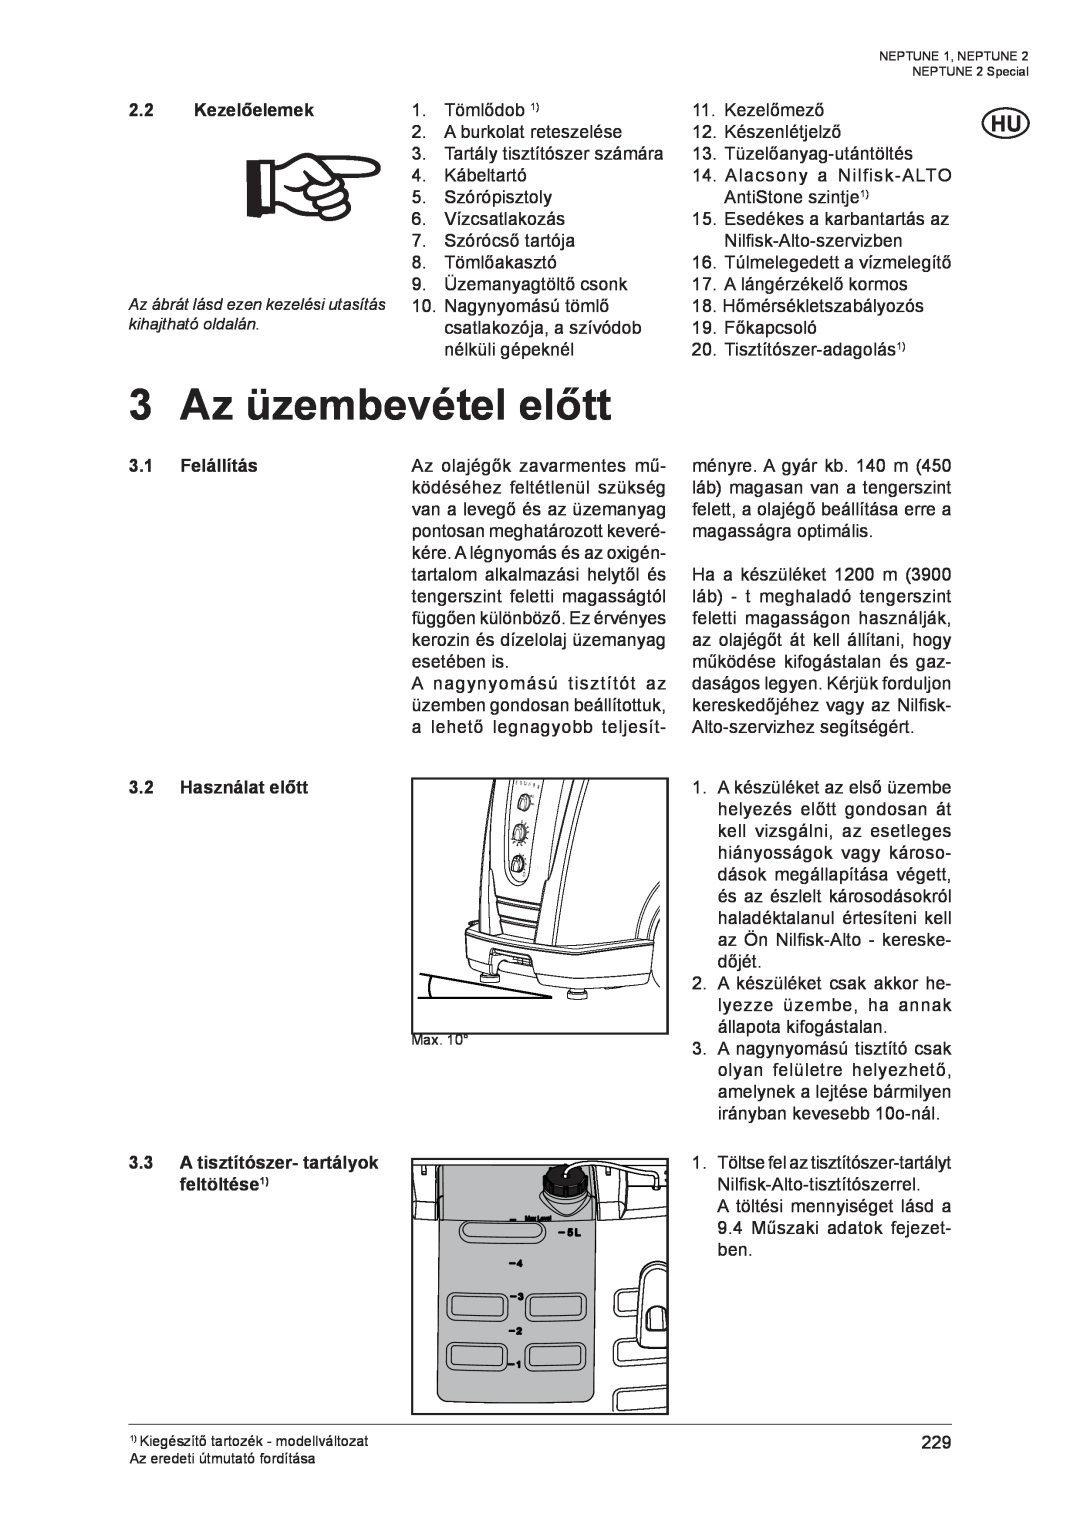 Nilfisk-ALTO NEPTUNE 1 manual 3 Az üzembevétel előtt, Kezelőelemek, 3.1 Felállítás 